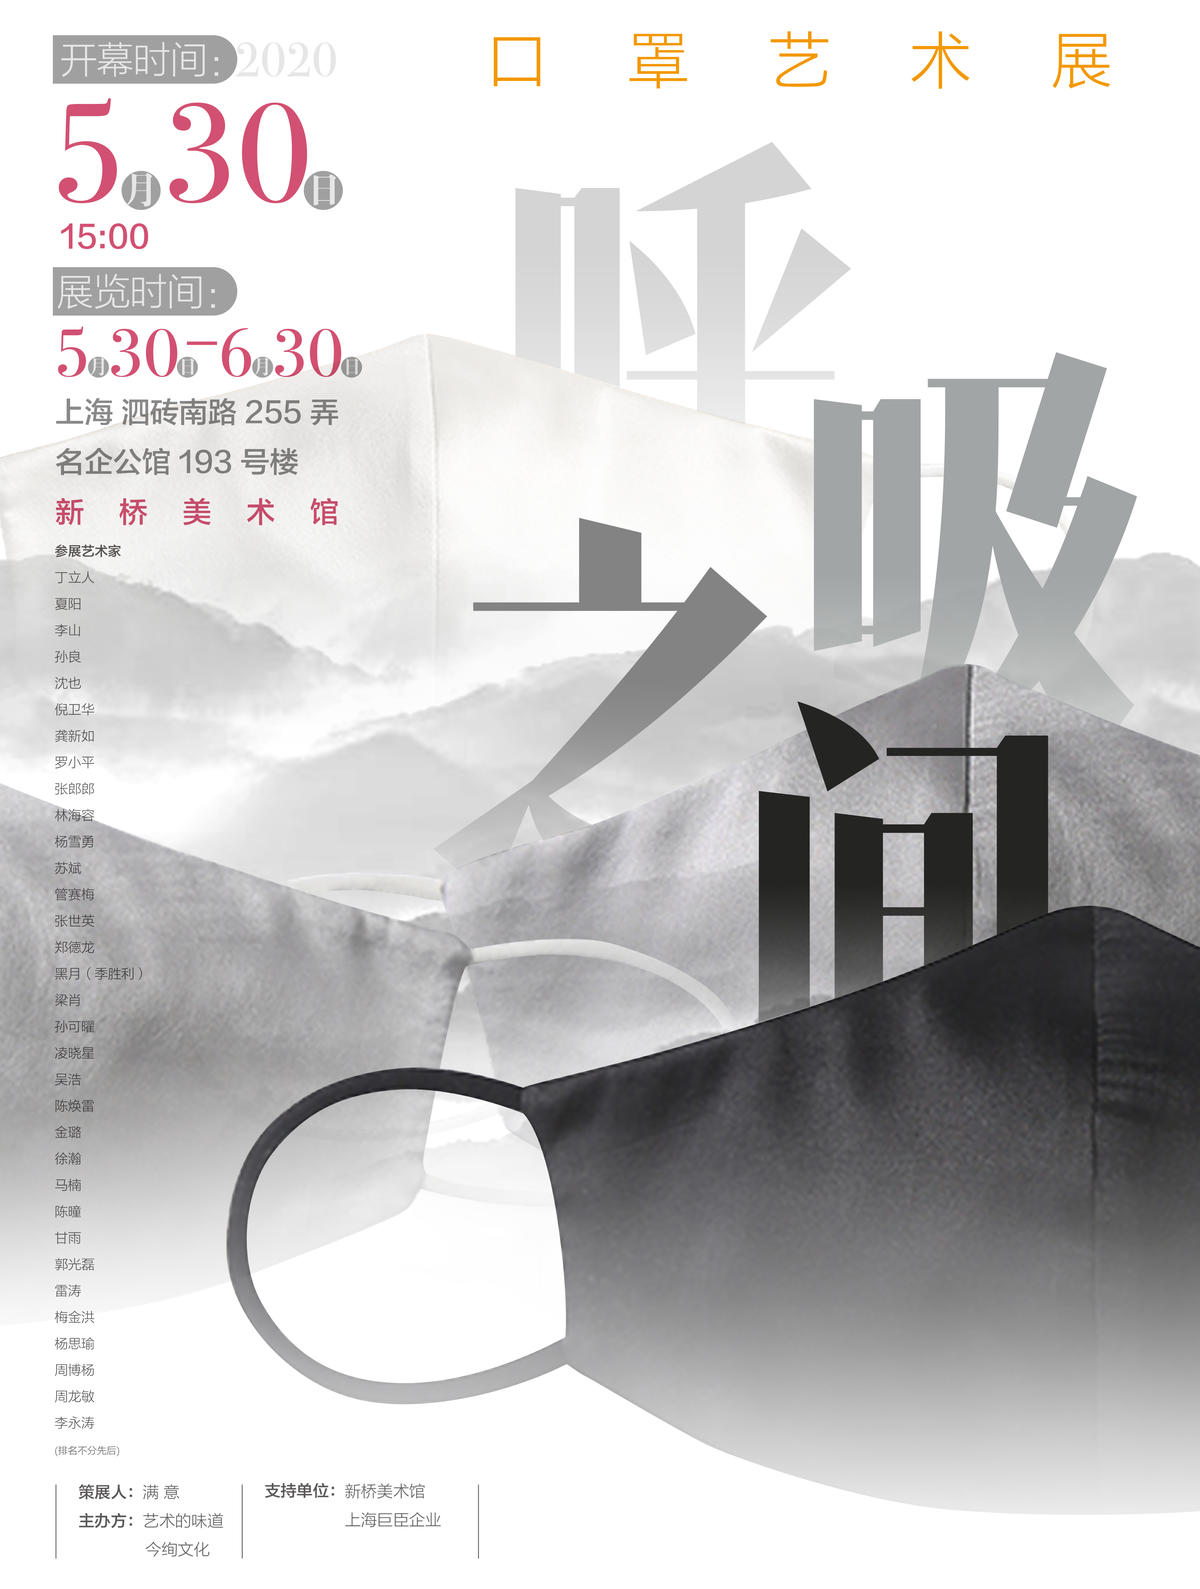 “呼吸之间”口罩艺术展将于5月30日在上海新桥开展，策展人裴满意策展